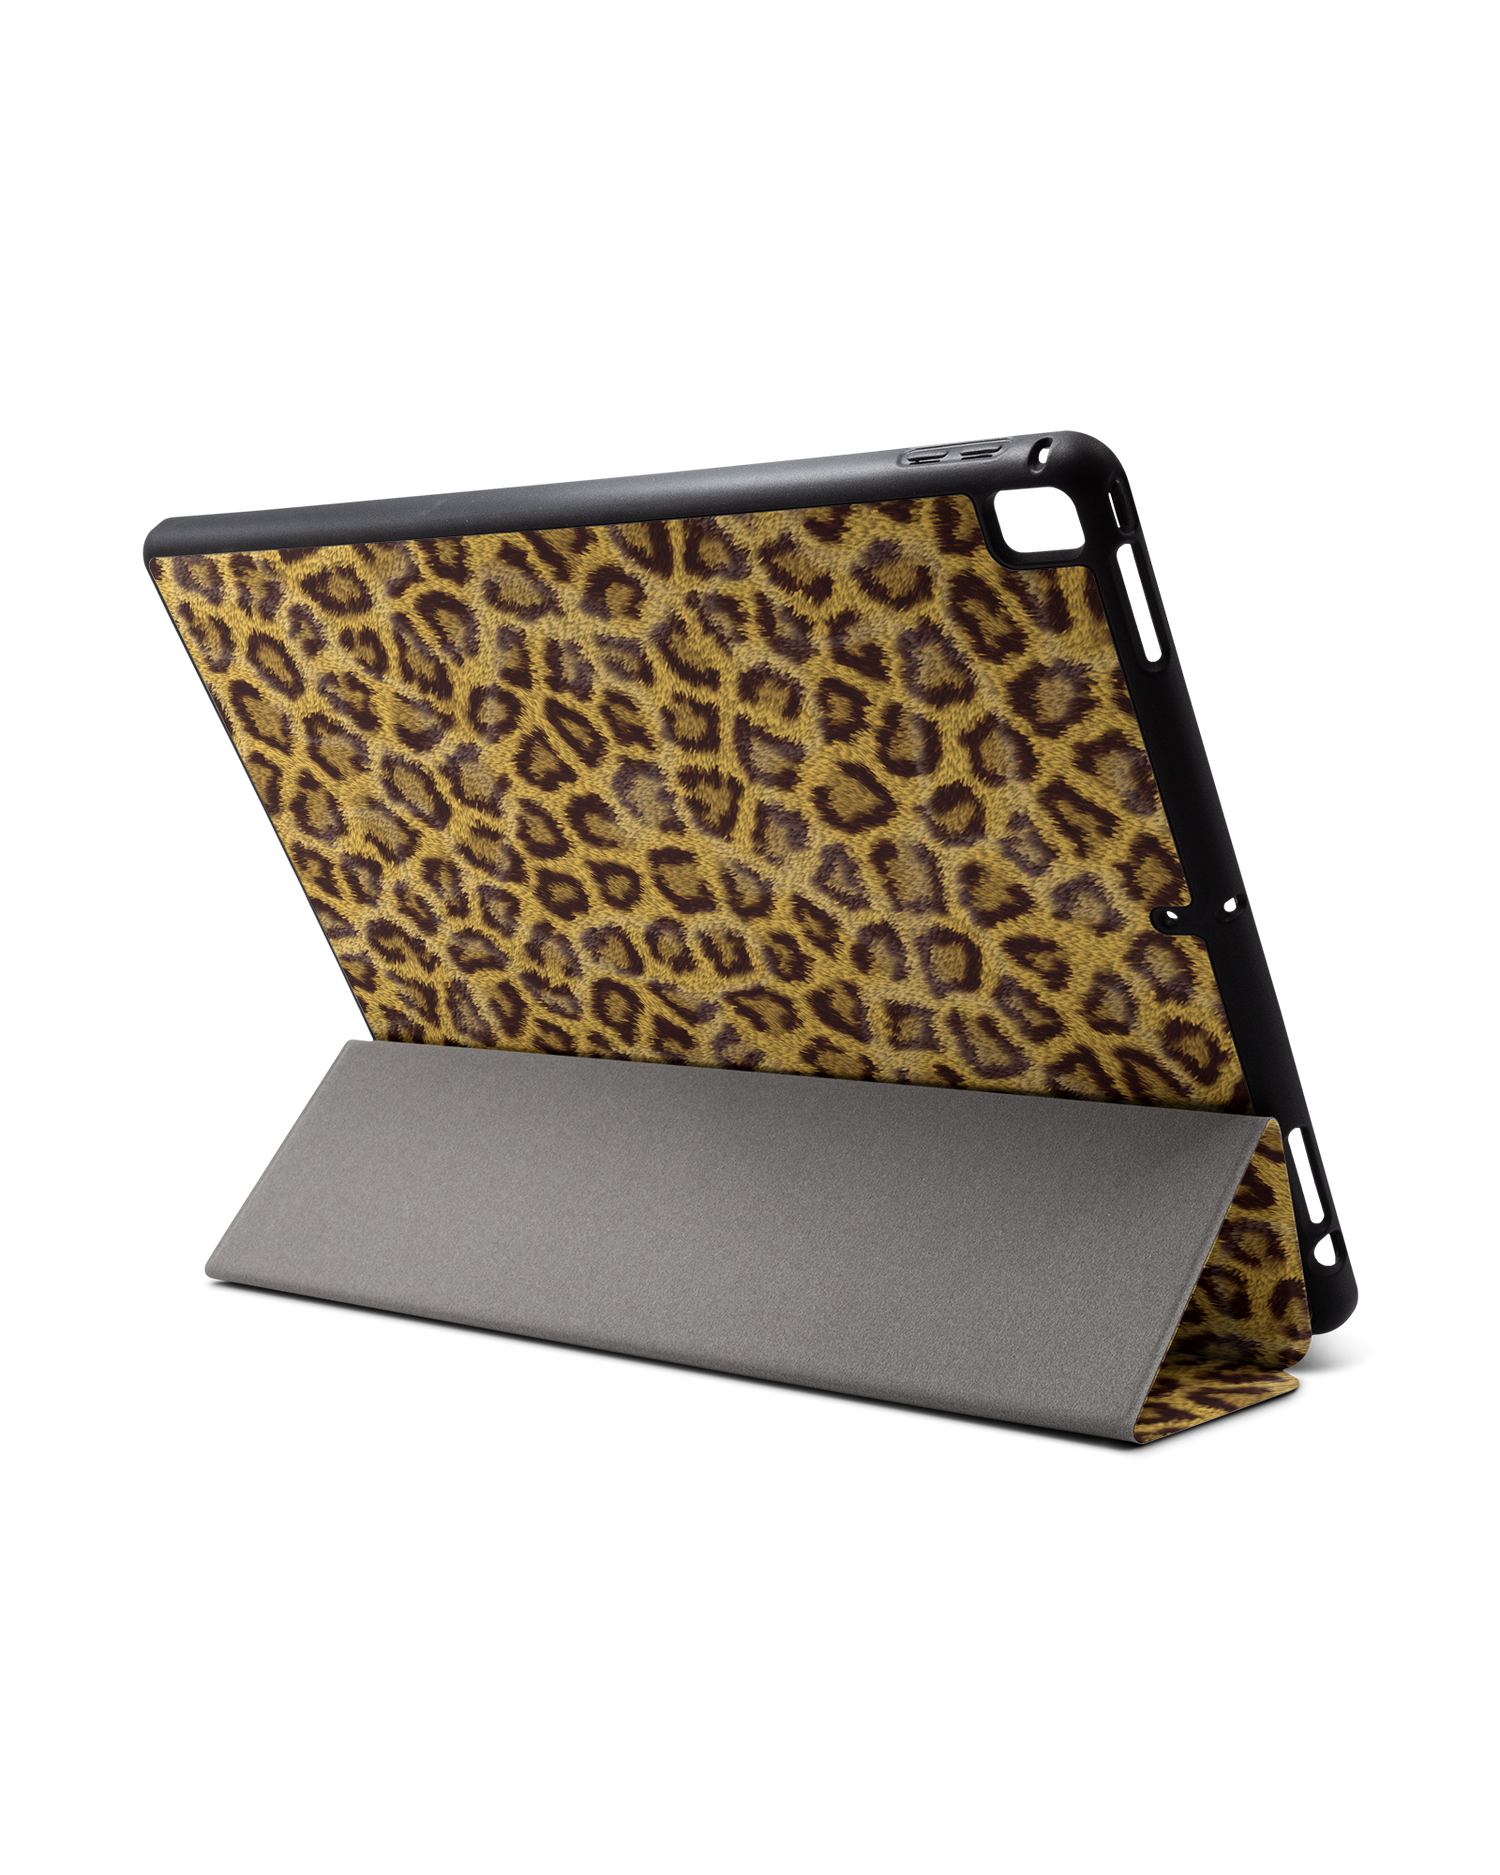 Leopard Skin iPad Hülle mit Stifthalter für Apple iPad Pro 2 12.9'' (2017): Aufgestellt im Querformat von hinten